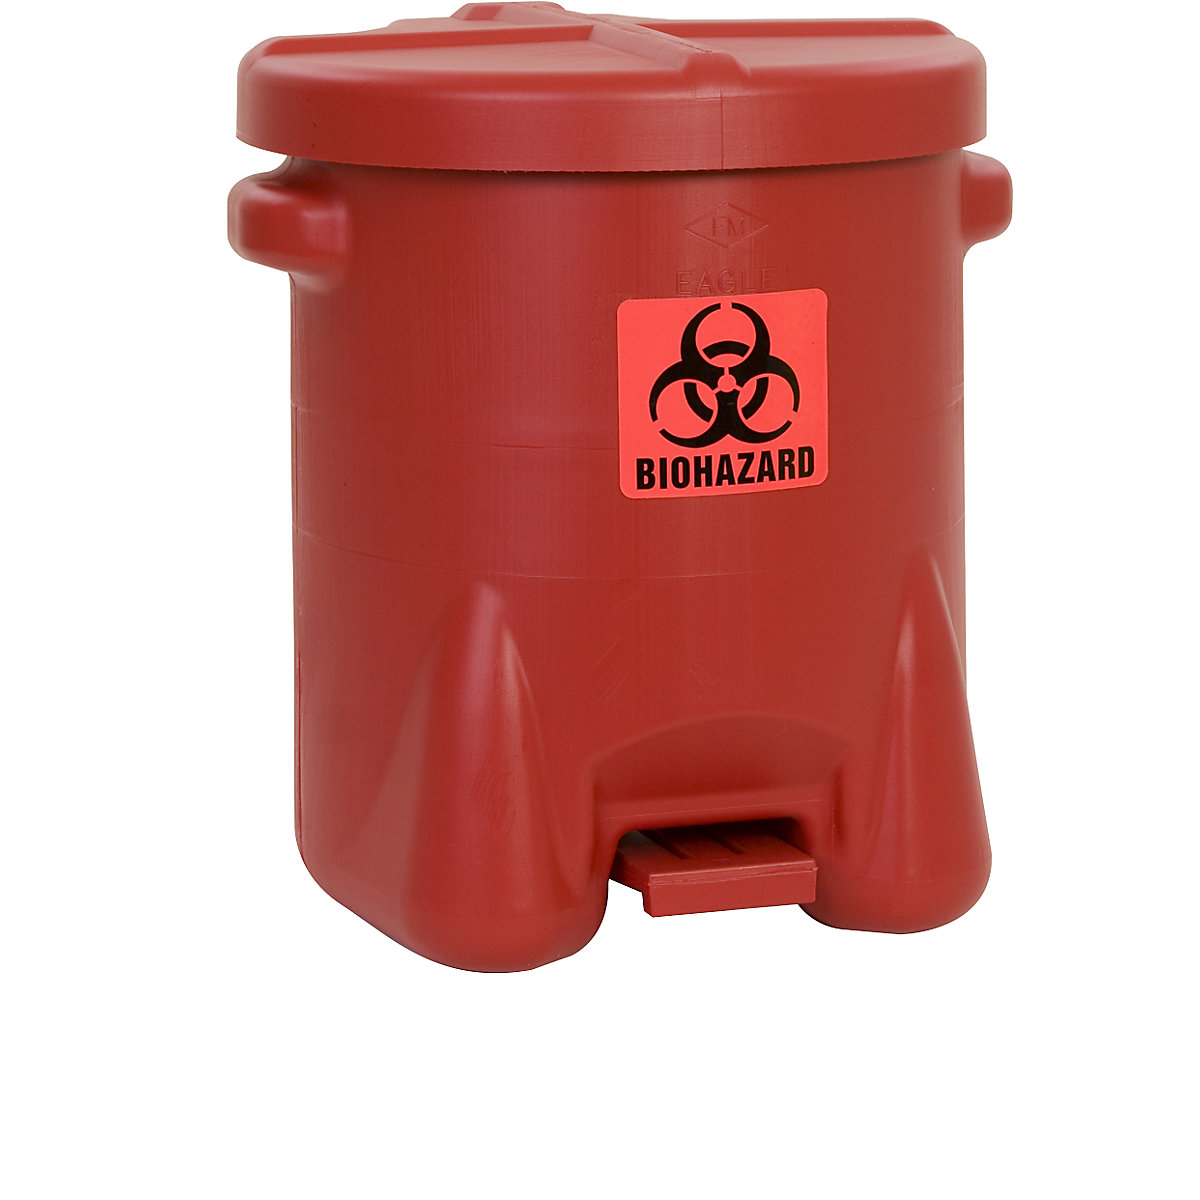 Veiligheidsafvalbak van PE voor de verwijdering van biogevaarlijke afvalsoorten - Justrite